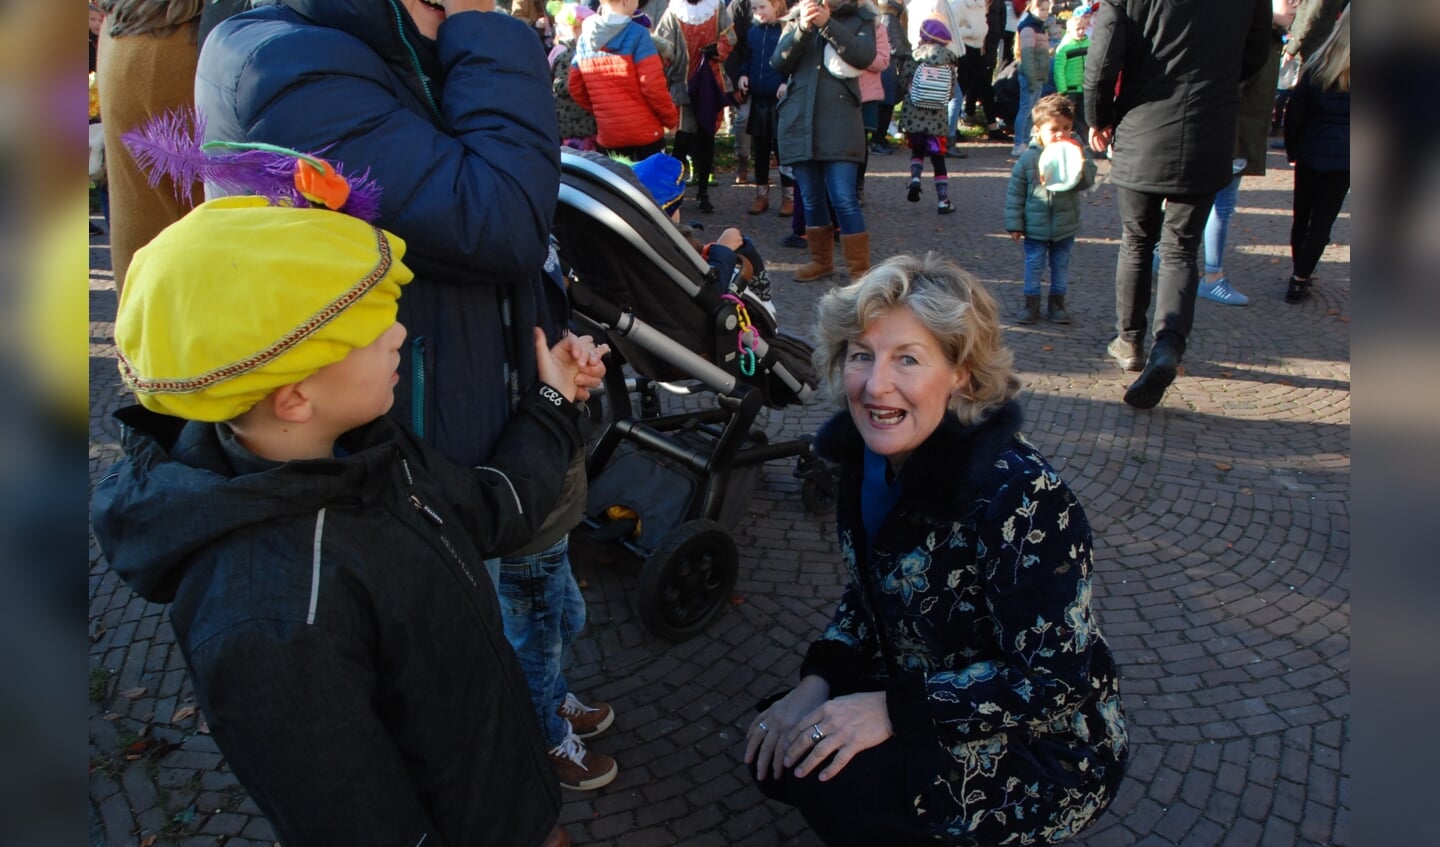 Burgemeester Corrie van Ree in gesprek met een kleine Piet bij Huize Scherpenzeel.